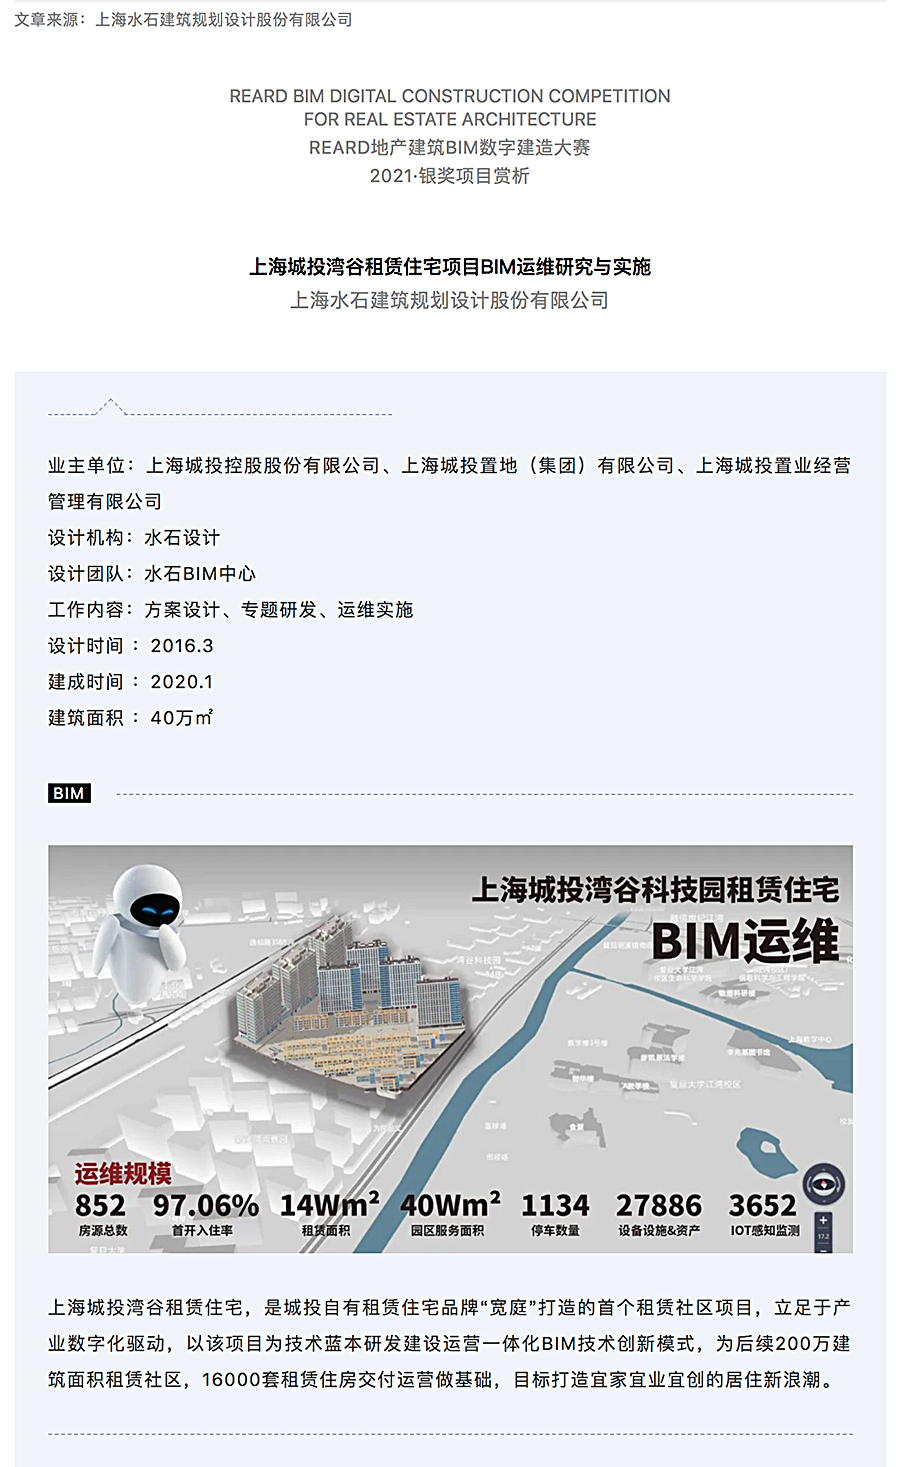 千万级数据贯通-_-上海城投湾谷租赁住宅项目BIM运维研究与实施_0000_图层-1.jpg